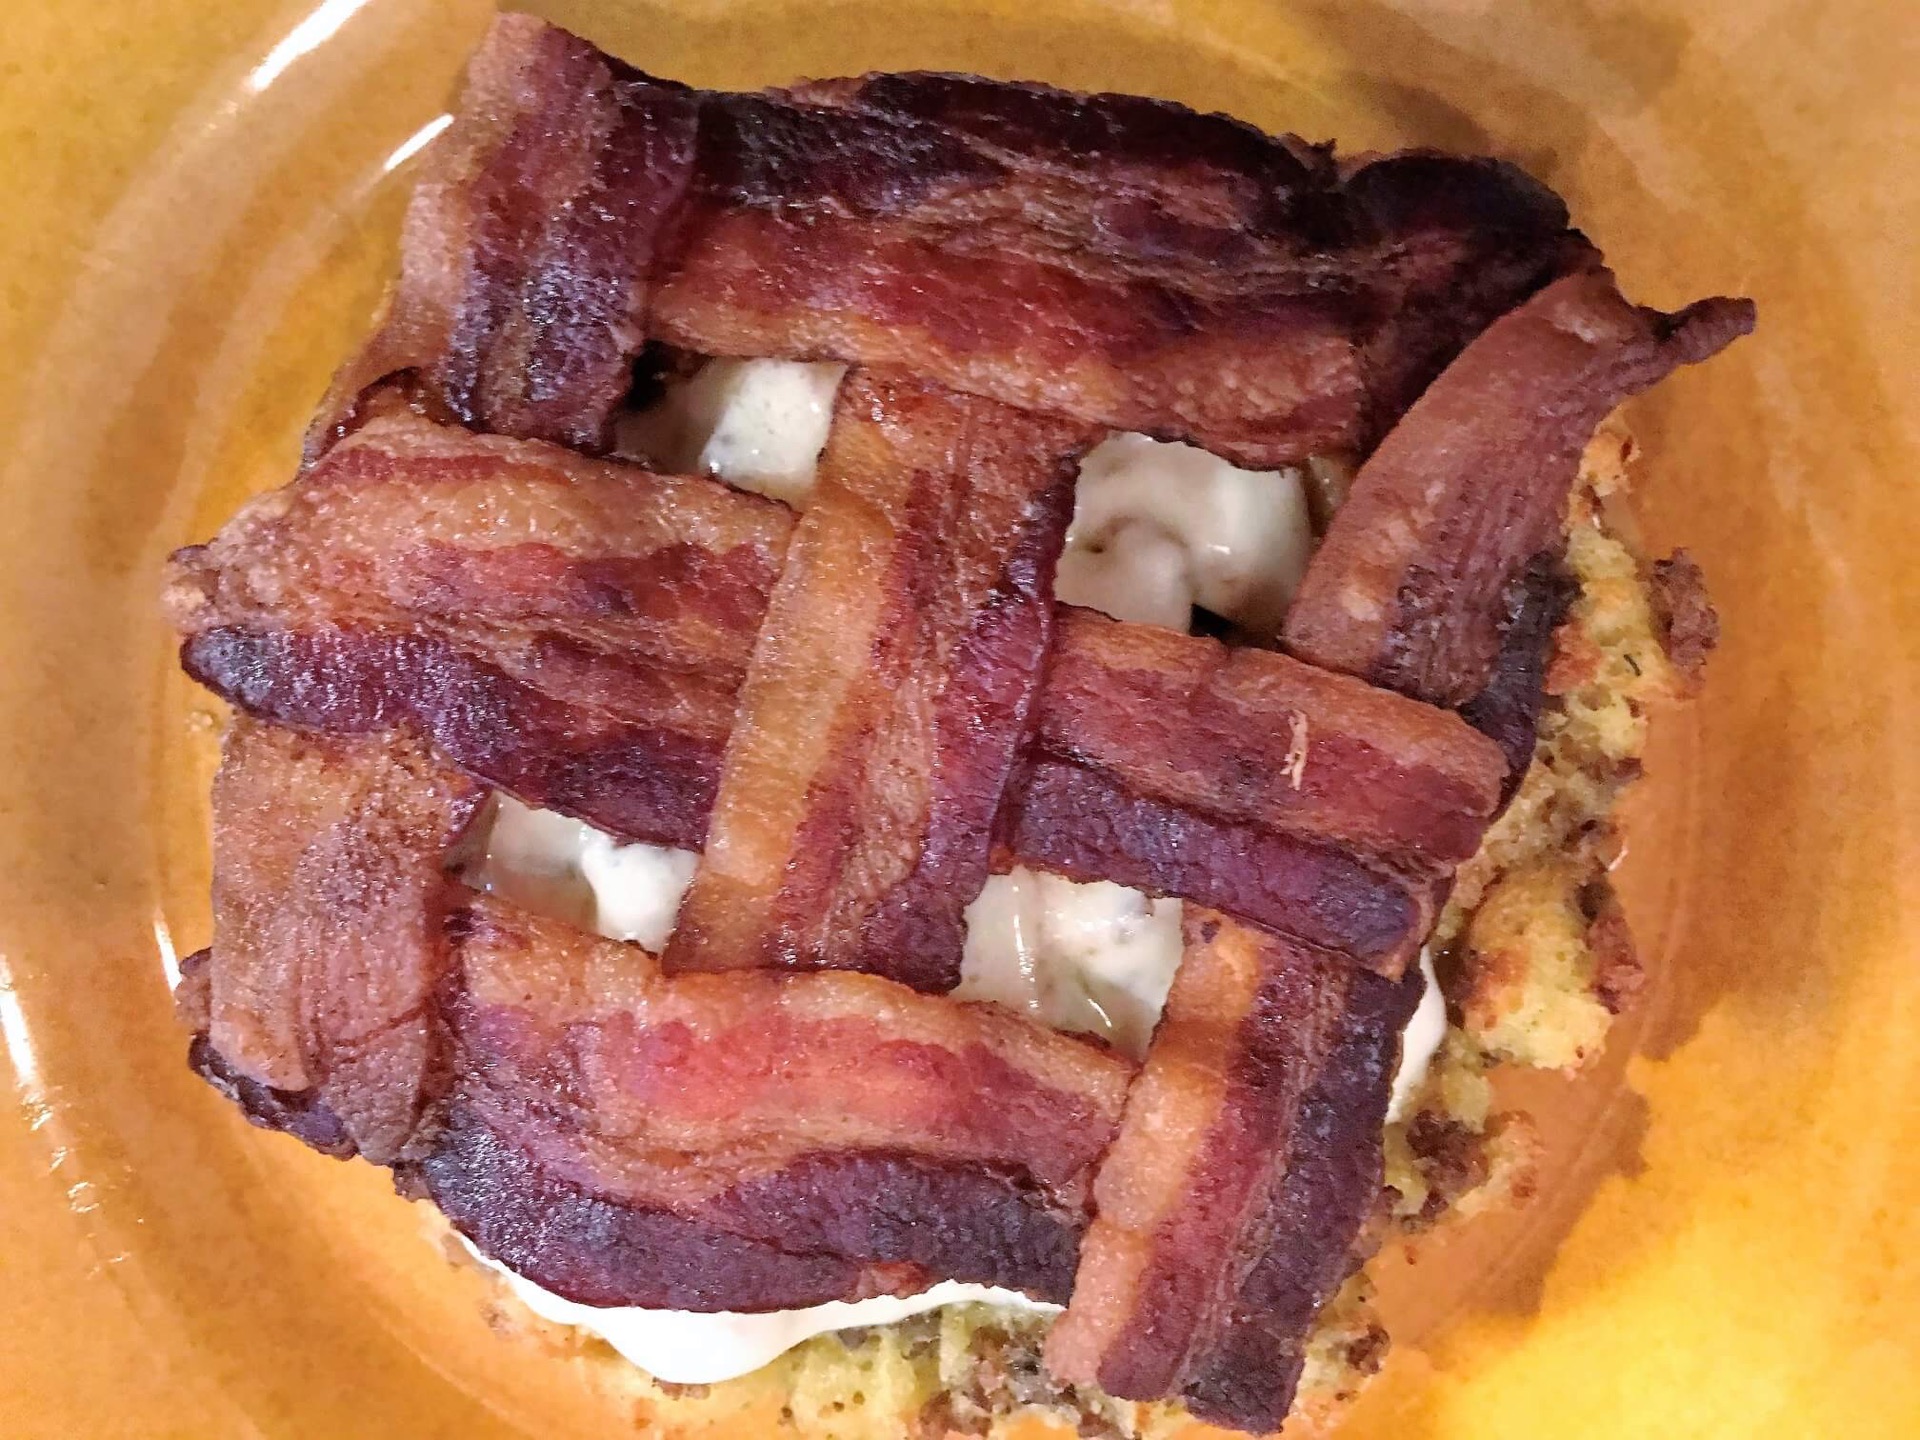 Crispy bacon in a basket-weave pattern atop a breakfast dish